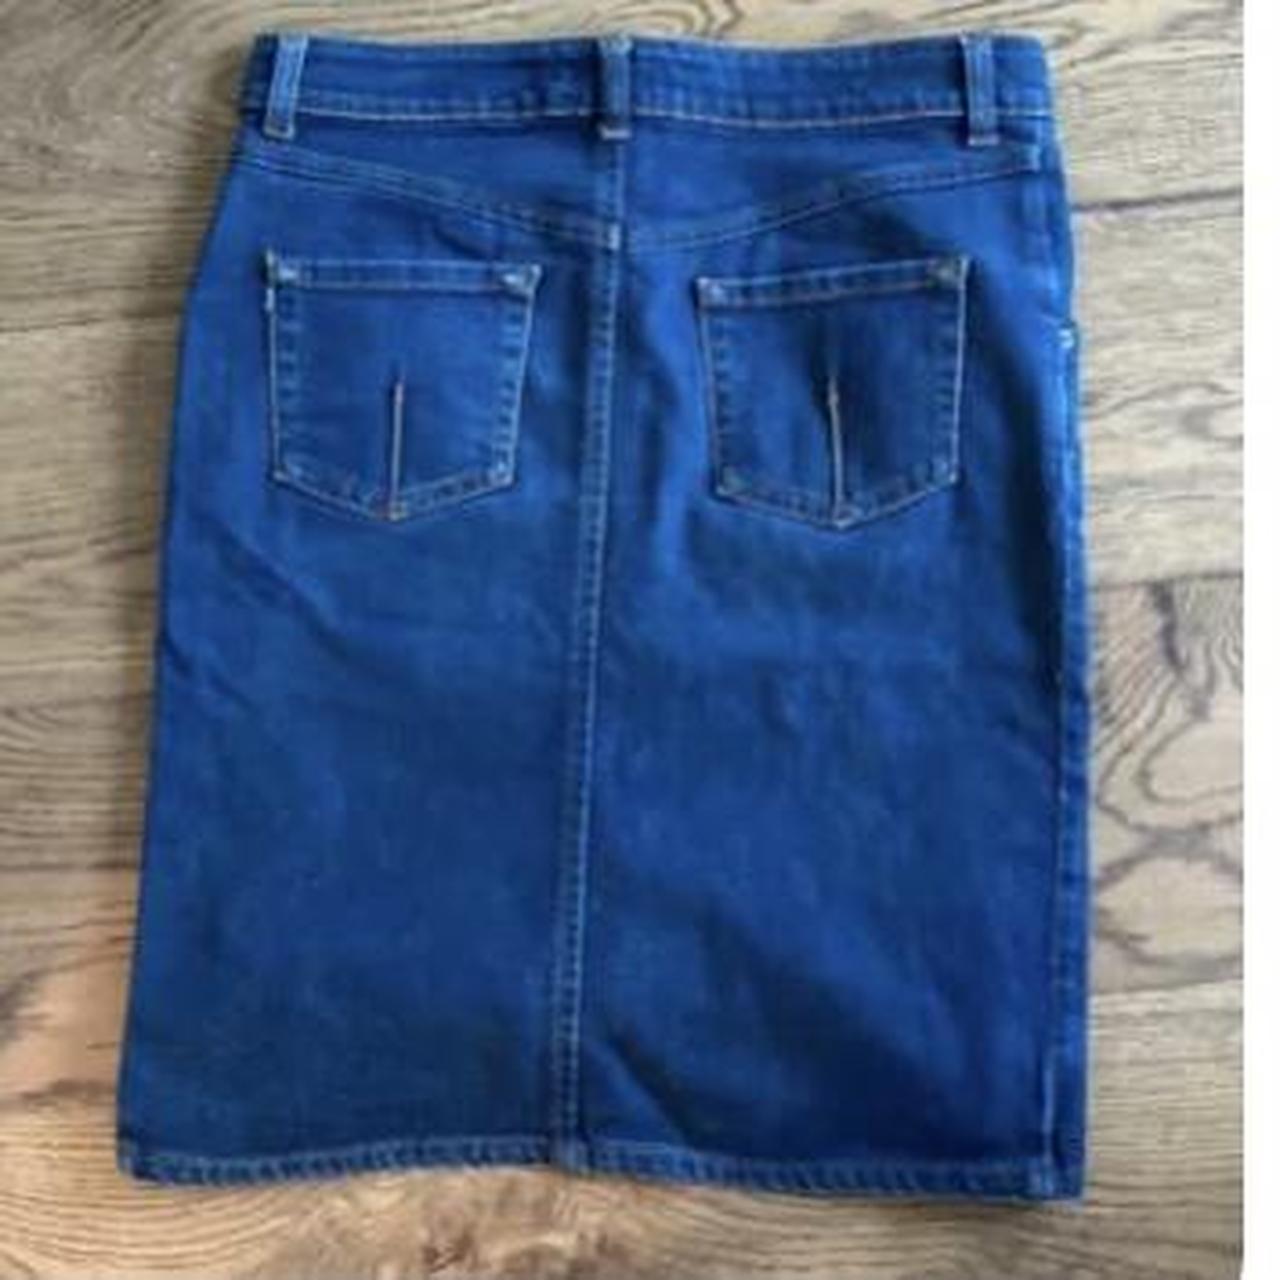 Reiss blue denim skirt size 10 Side Splits Figure... - Depop